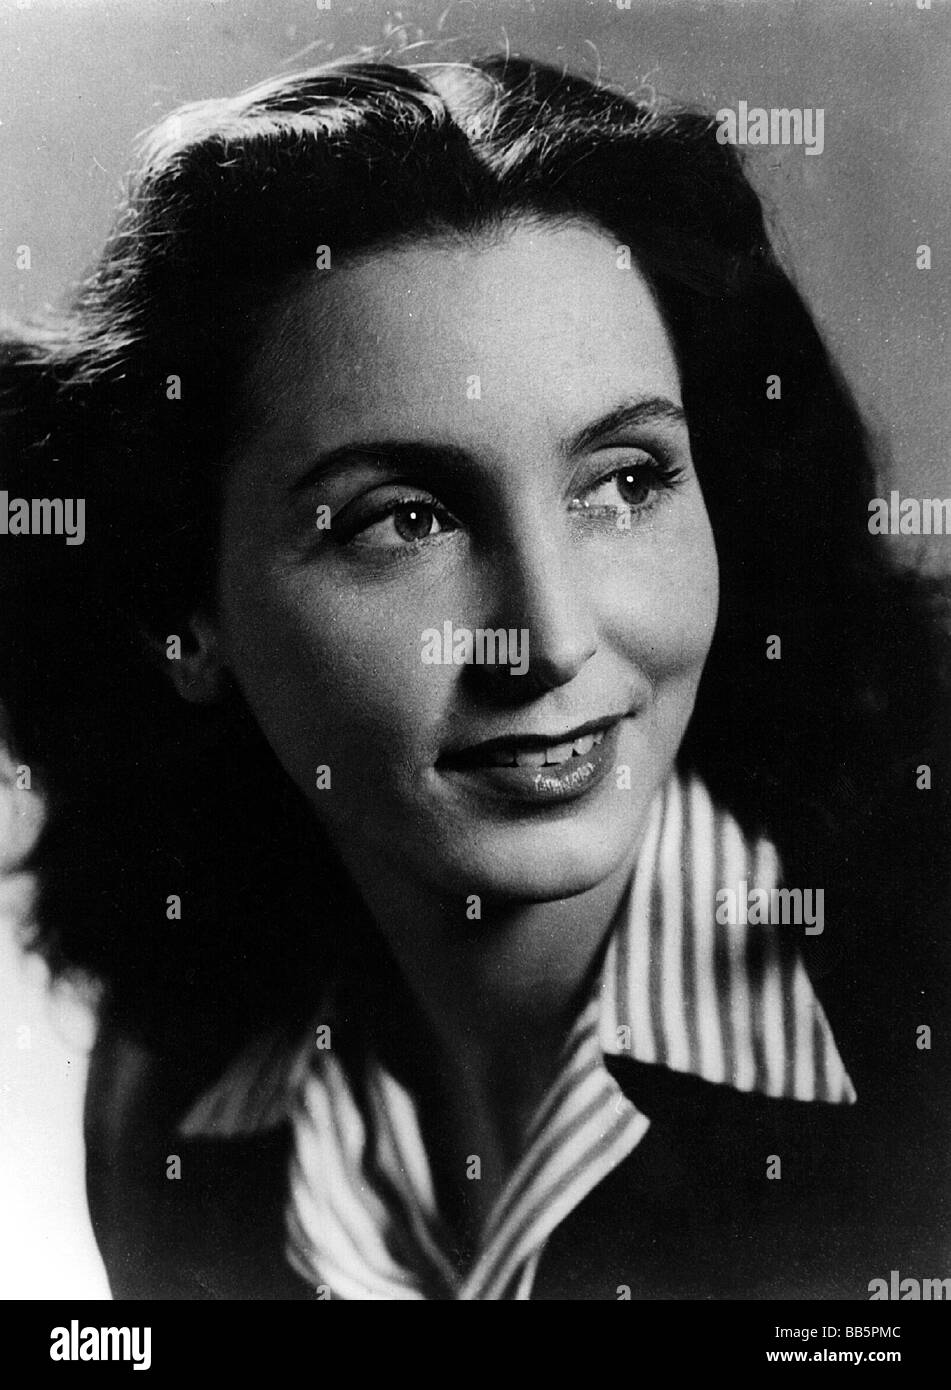 Juergens, Curd, 13.12.1915 - 18.6.1982, deutscher Schauspieler, Porträt, seine zweite Frau Judith Holzmeister, 1943, Stockfoto